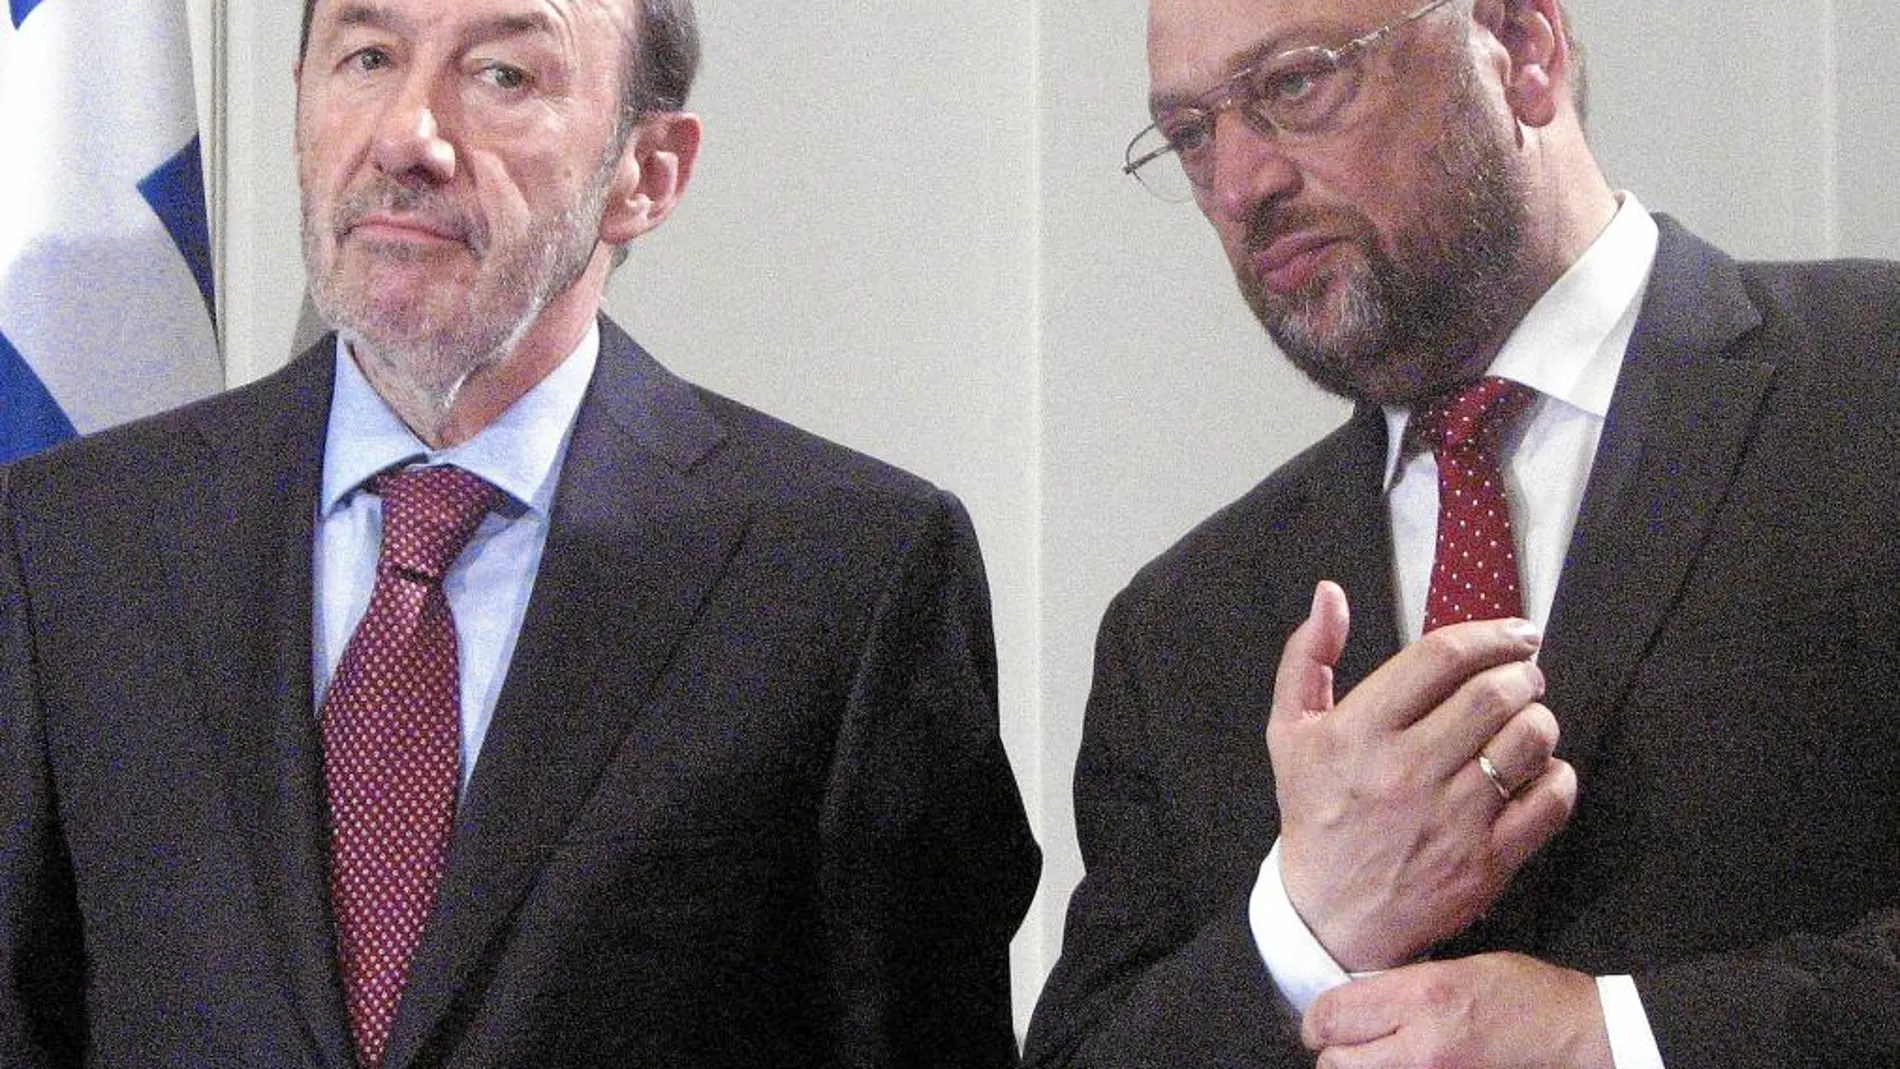 Rubalcaba, ayer, junto al presidente del Parlamento Europeo, Martin Schulz